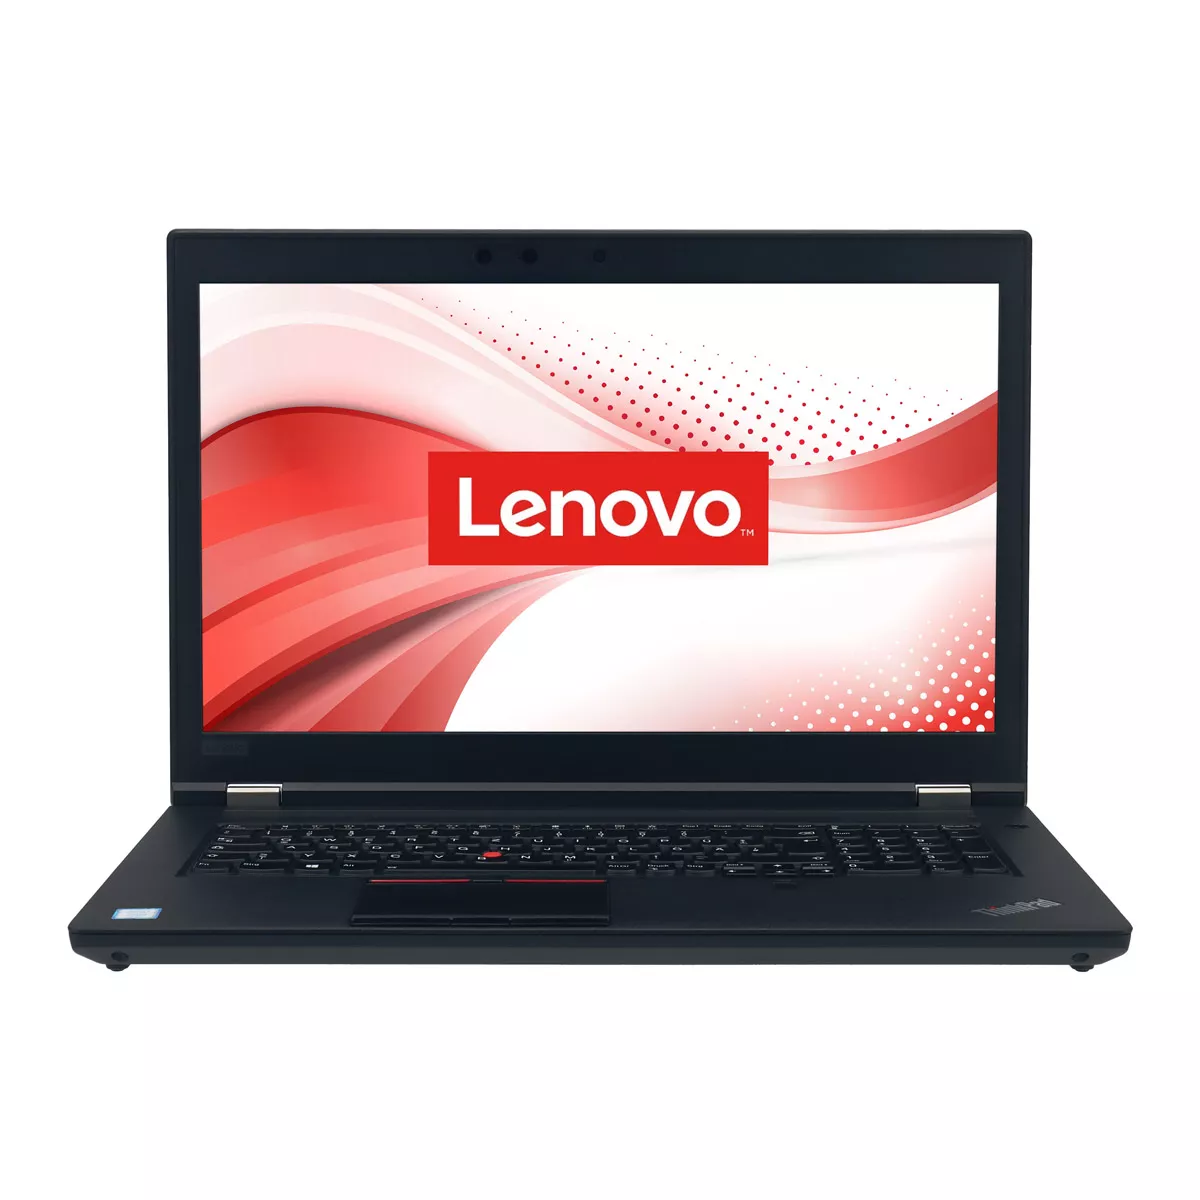 Lenovo ThinkPad P72 Core i7 8750H nVidia Quadro P2000M 64 GB 500 GB M.2 nVME SSD Webcam A+